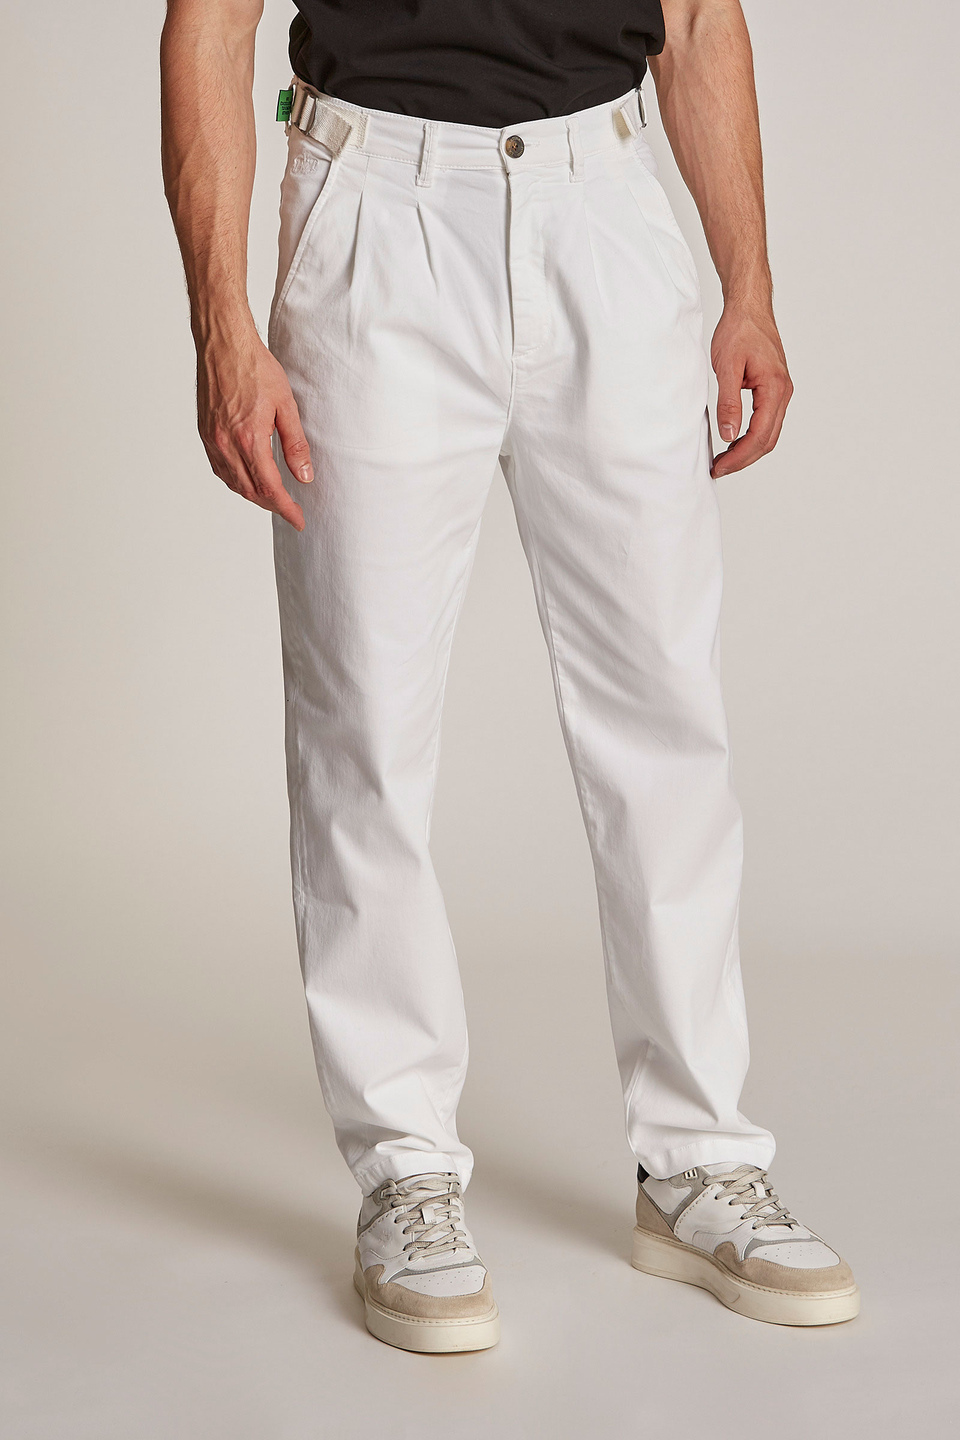 Pantalone da uomo modello chino regular fit | La Martina - Official Online Shop